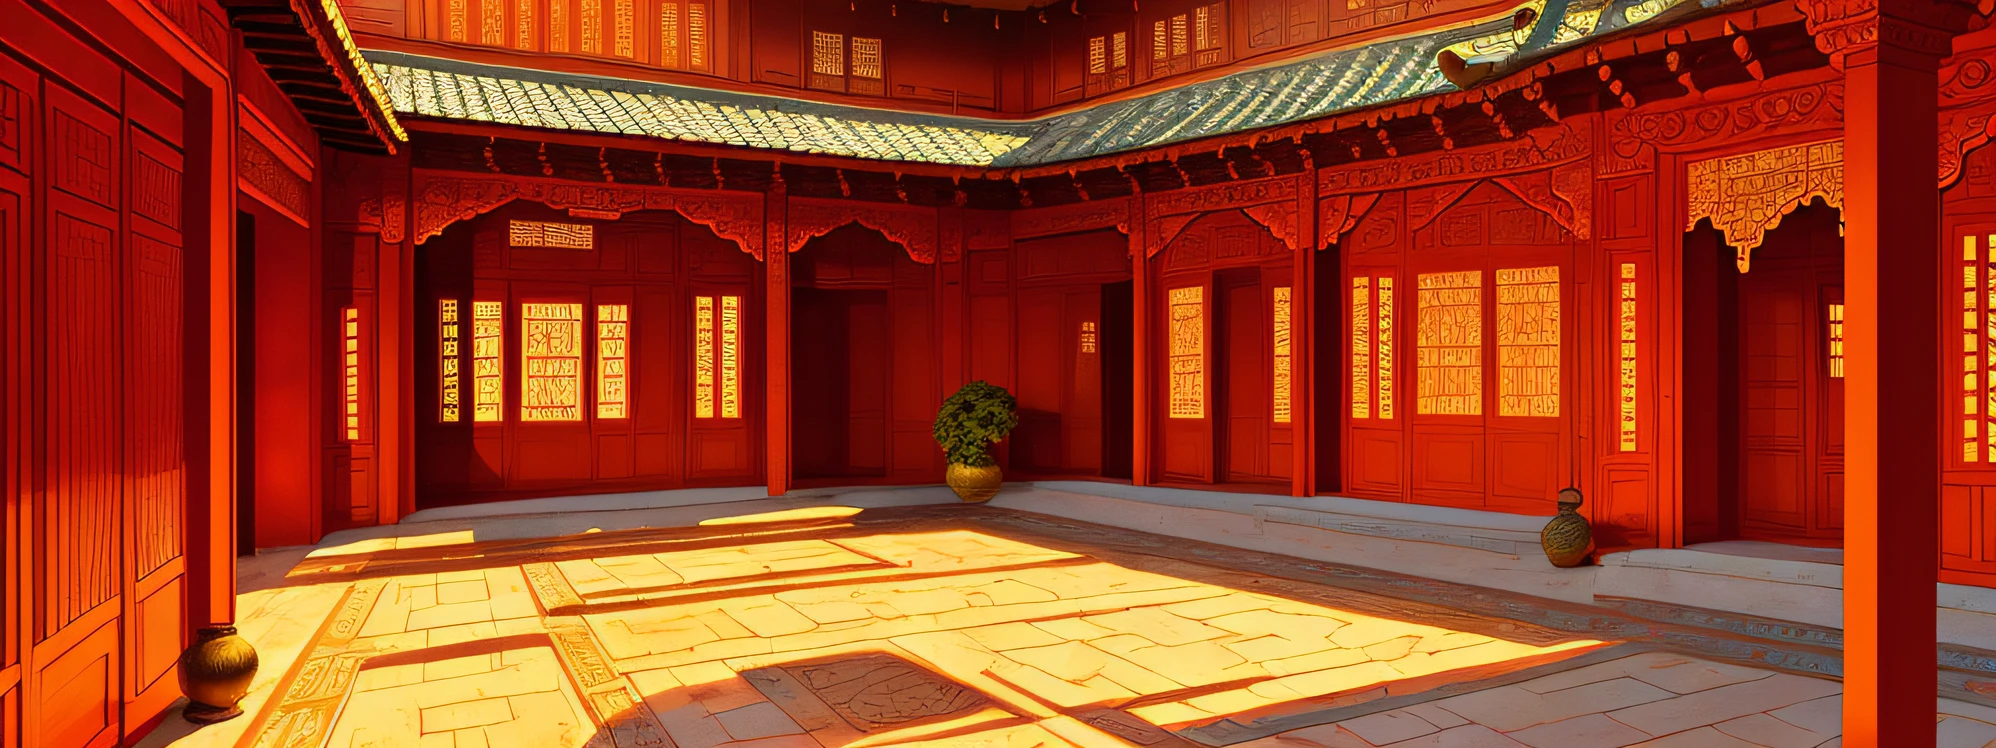 obra-prima, Mejor calidad, alta calidad, extremadamente detallado, una hilera de patios chinos, PALACIO DE LA INDIA ORIENTAL CON IMAGEN REALISTA